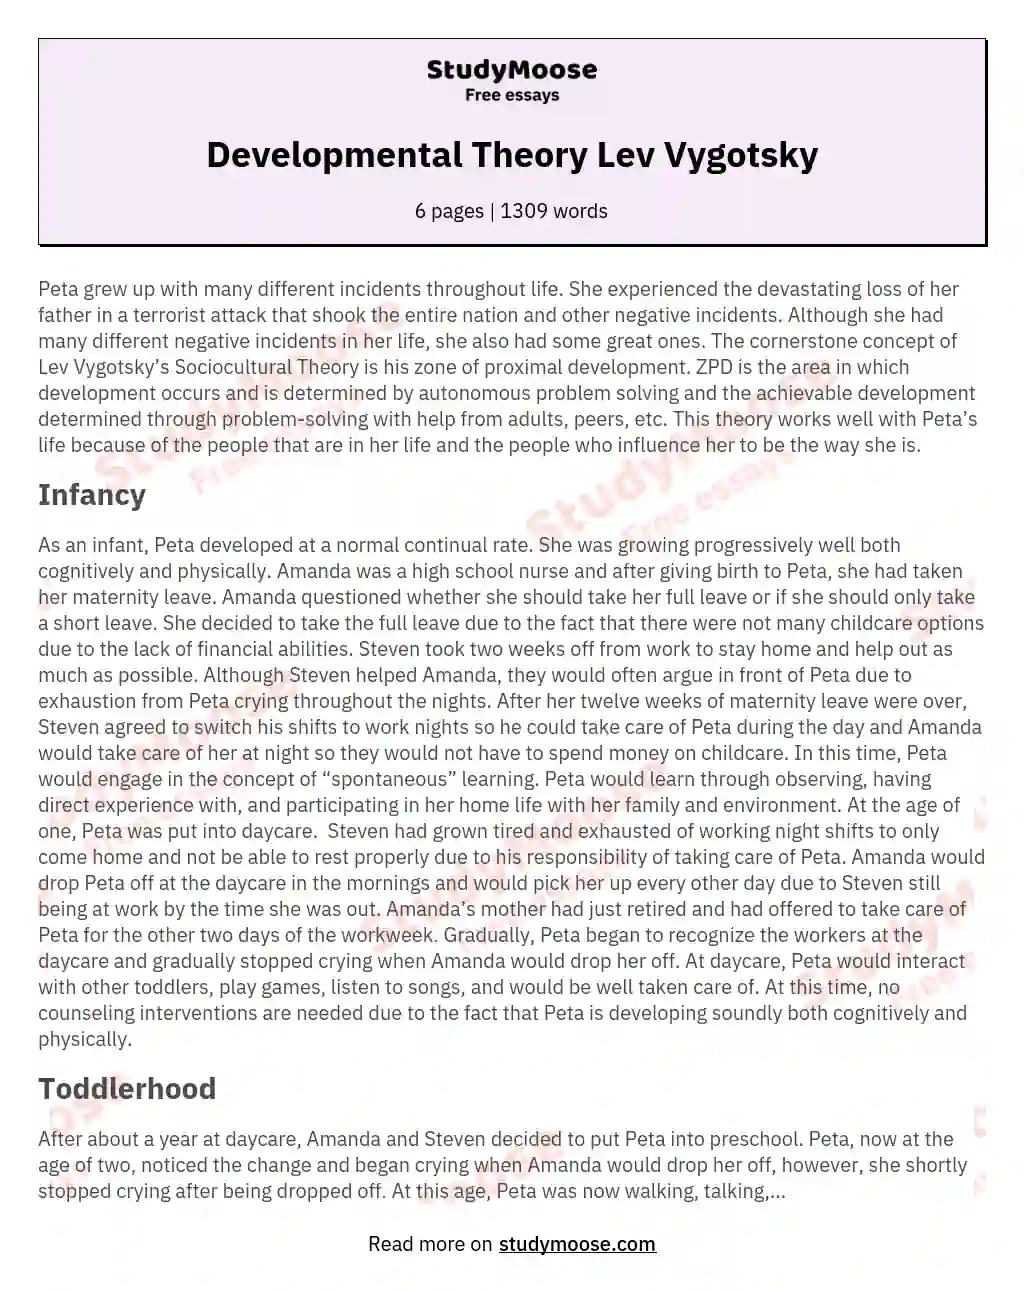 Developmental Theory Lev Vygotsky essay